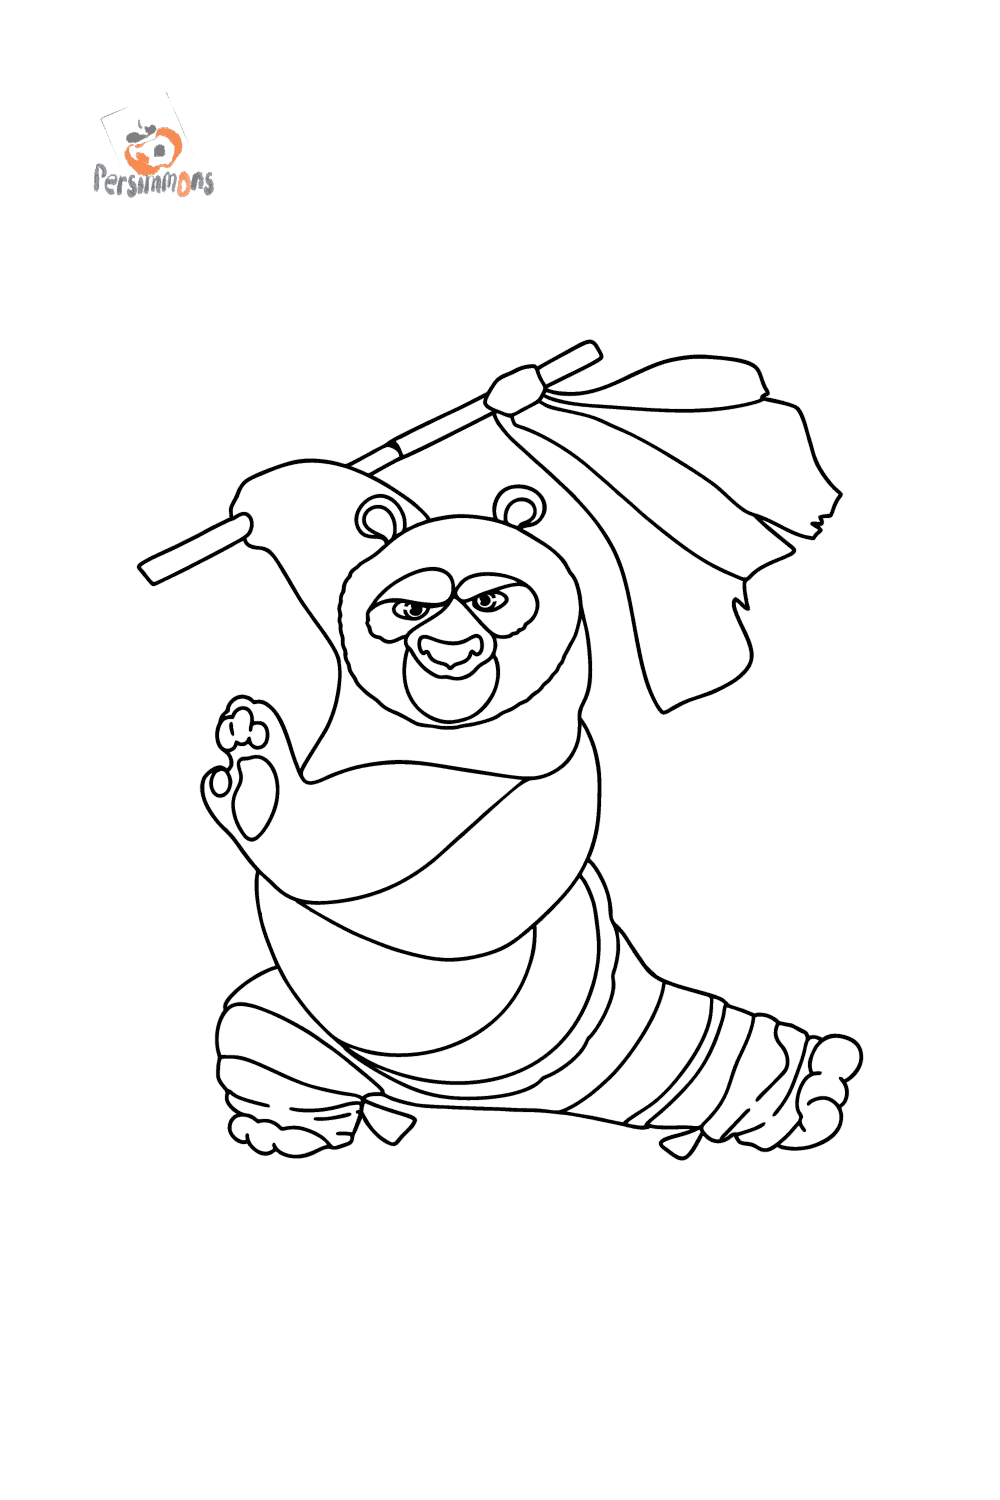 Распечатайте или добавьте в избранное одну из раскрасок по мультфильму Кунг-фу Панда